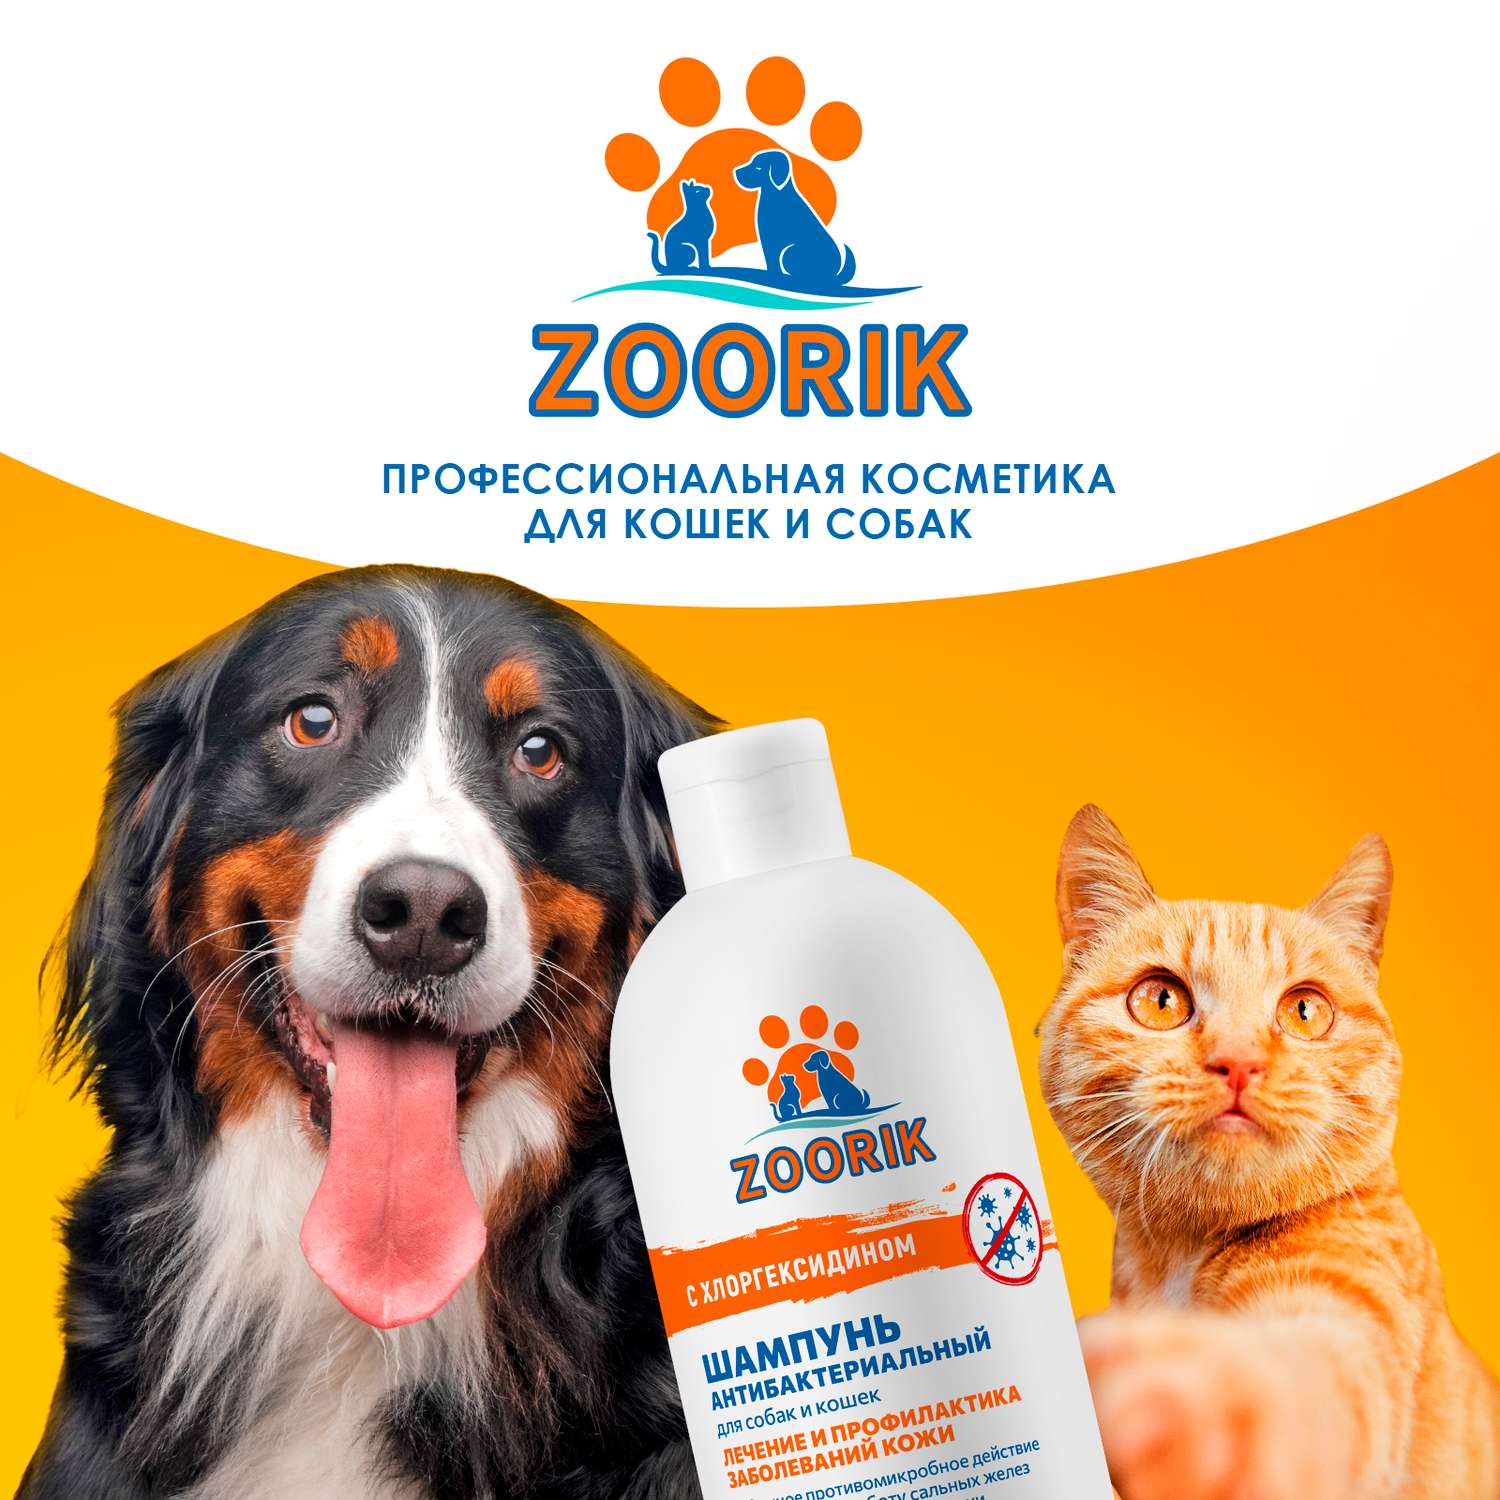 Шампунь для собак и кошек ZOORIK антибактериальный 500 мл - фото 10